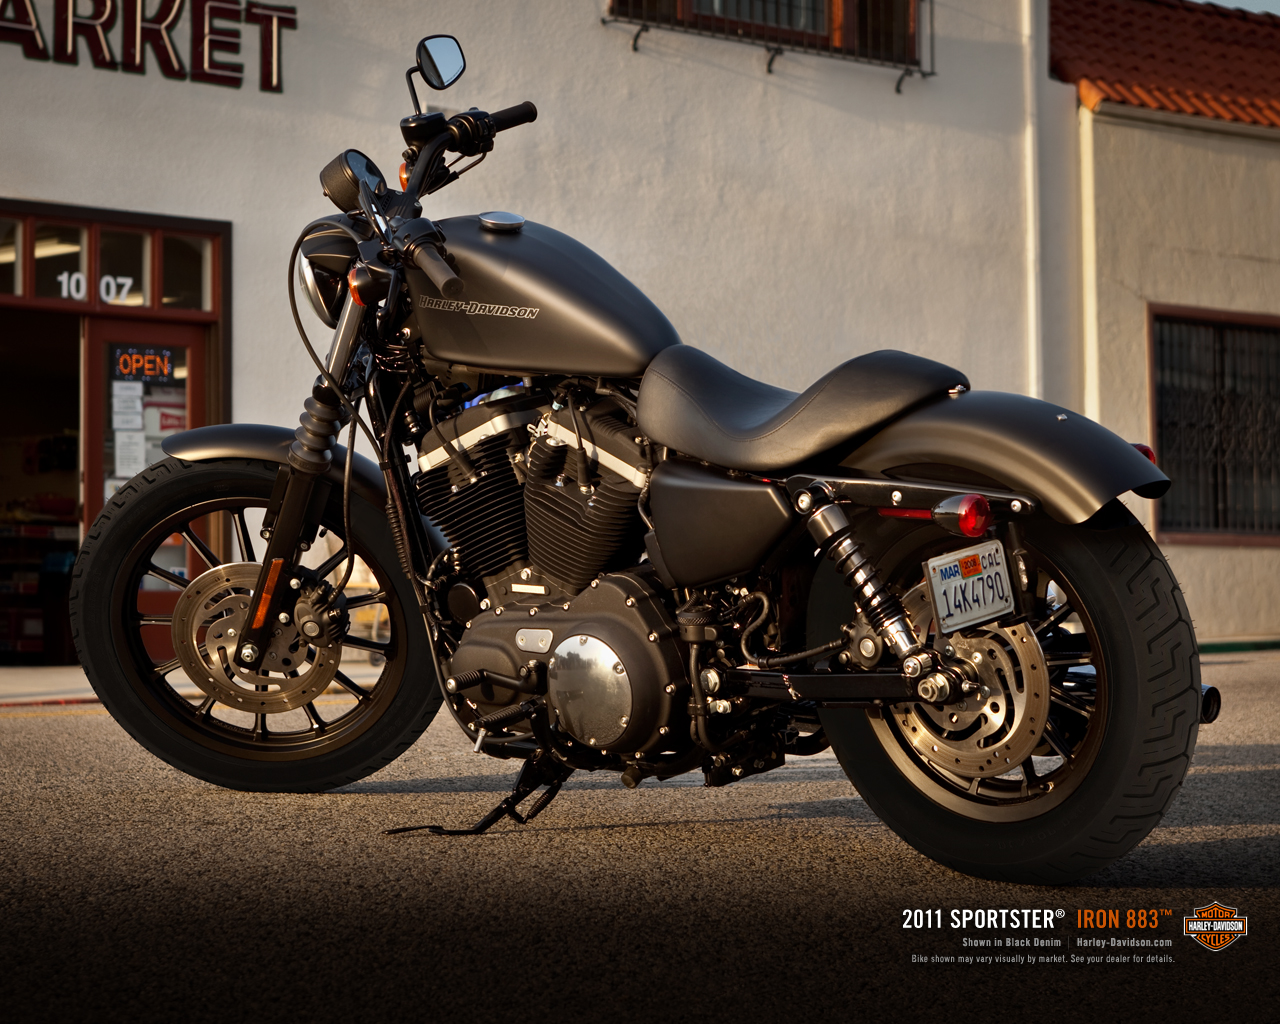 Harley Davidson Sportster Iron 883 release for 2011 Motor Sport